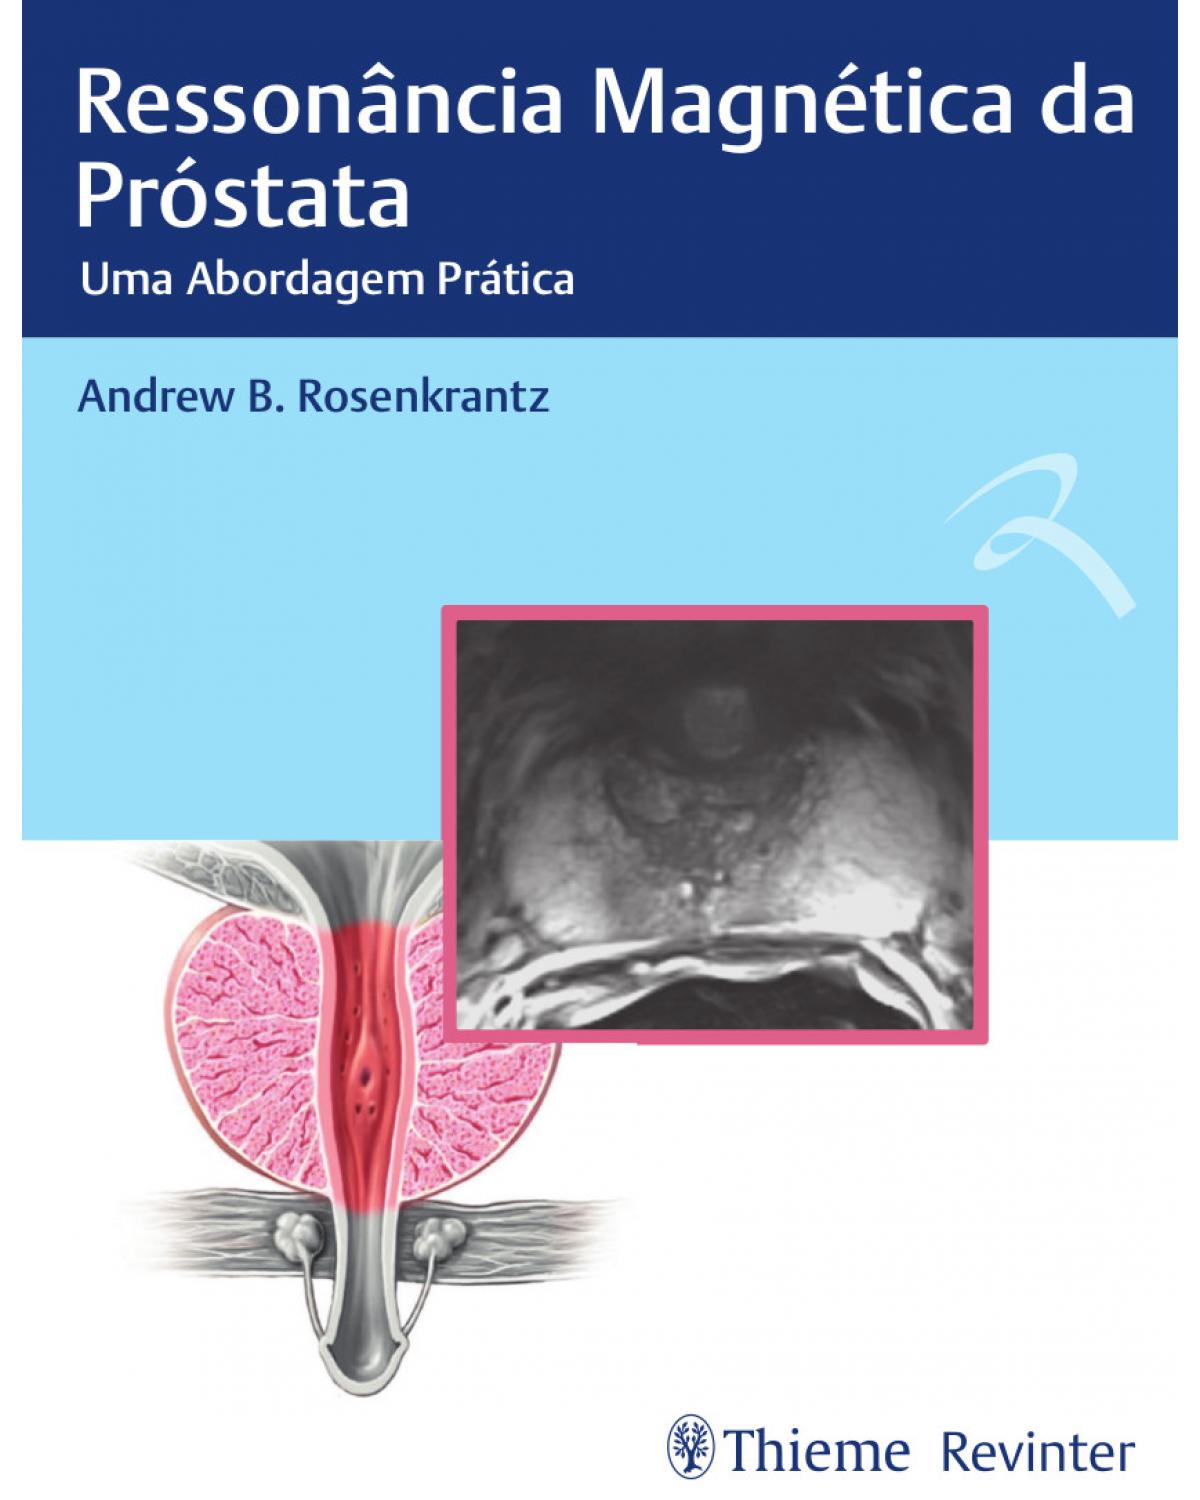 Ressonância magnética da próstata - uma abordagem prática - 1ª Edição | 2018